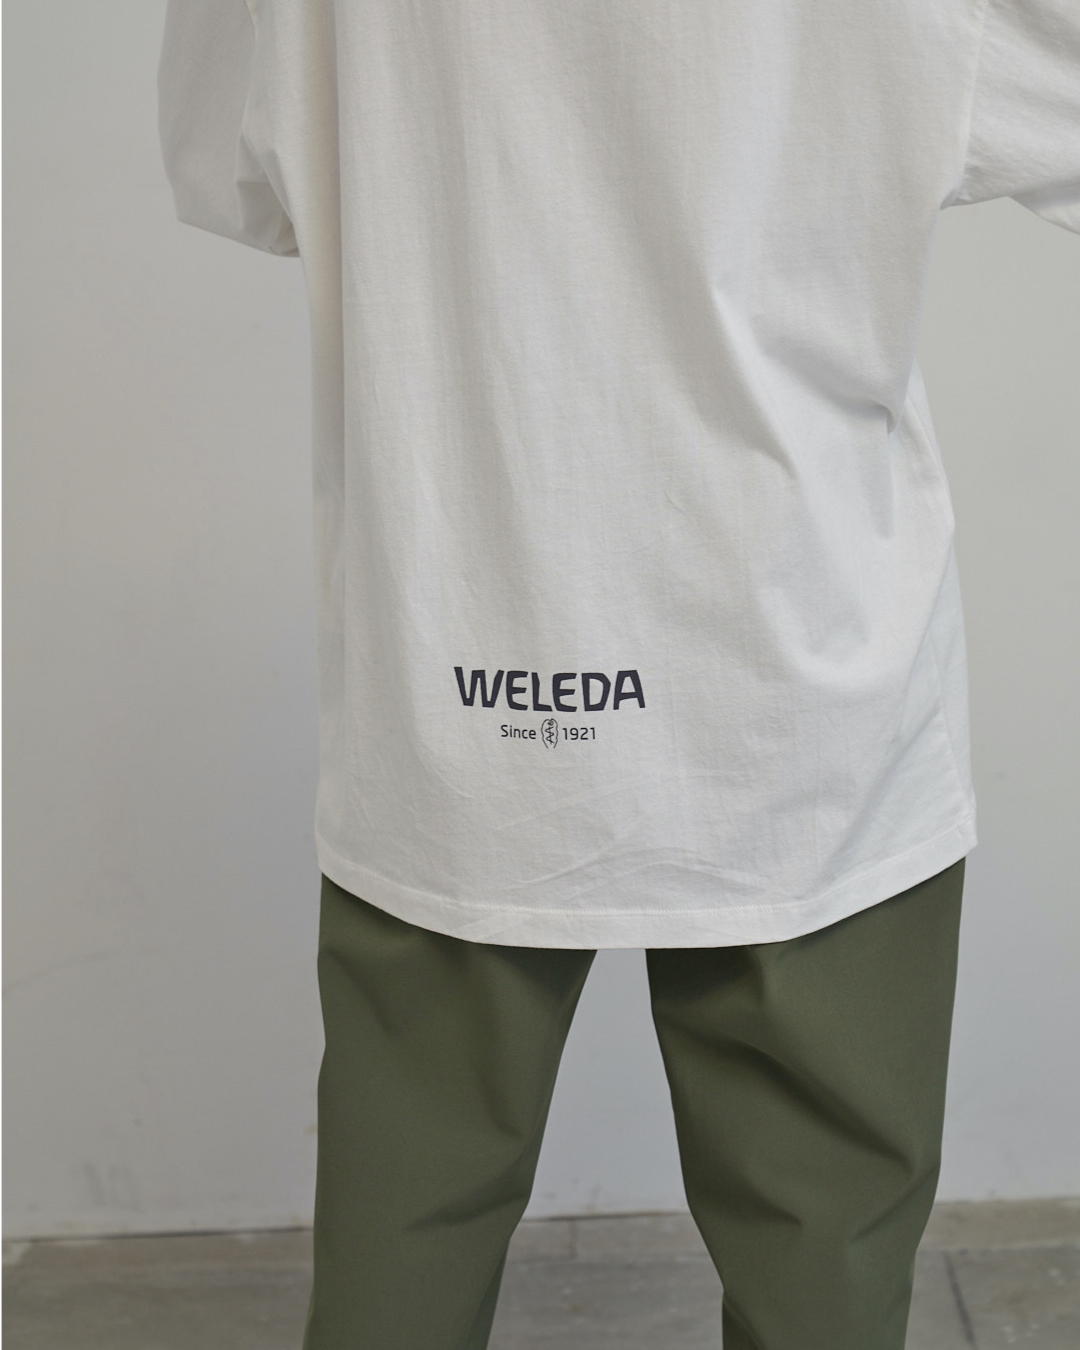 オーガニック化粧品ブランド「WELEDA」と ジェンダーレスなアクティブウェアブランド「Uiscel SENSE OF PLACE」のスペシャ ルコラボレーションアイテムが登場!のサブ画像4